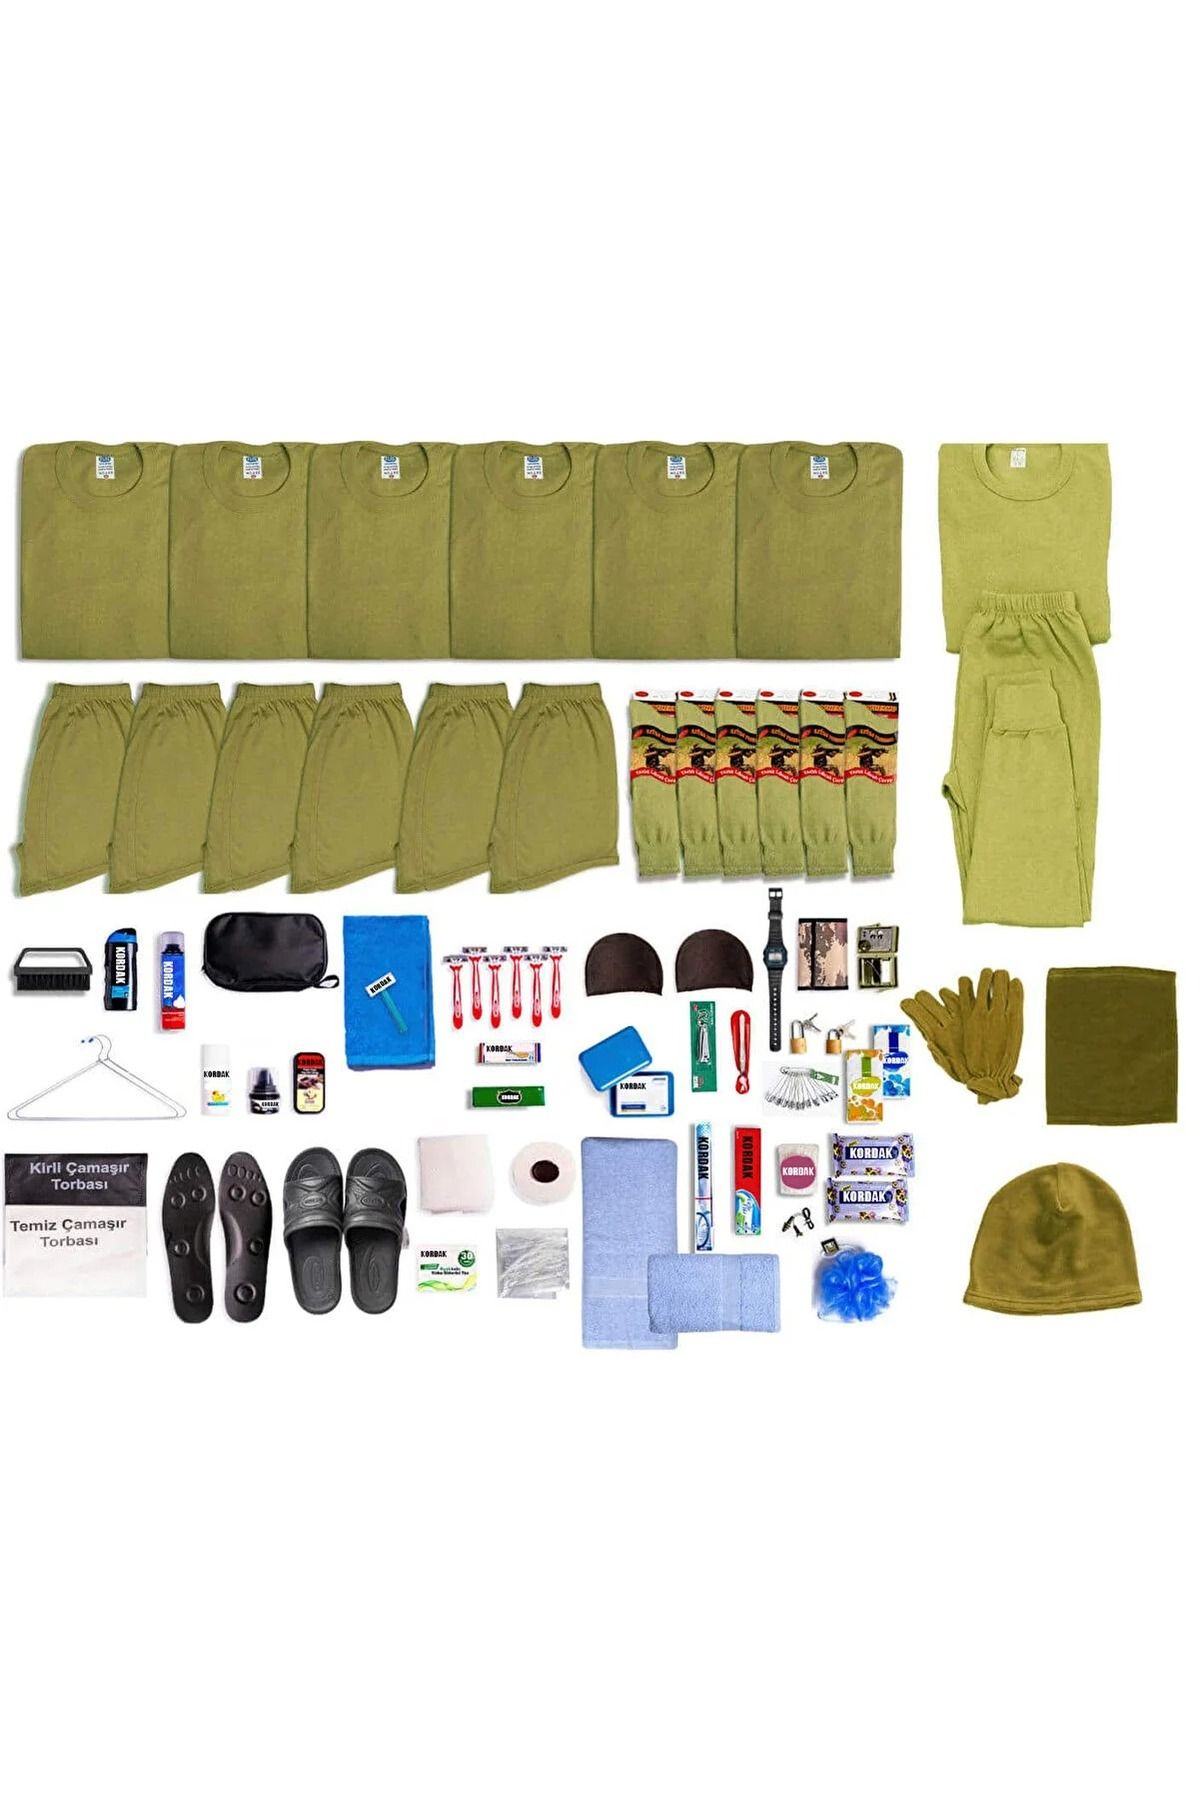 KORDAK 6’lı Kışlık Her Şey Dahil Asker Seti: Kışlık Asker Malzemeleri